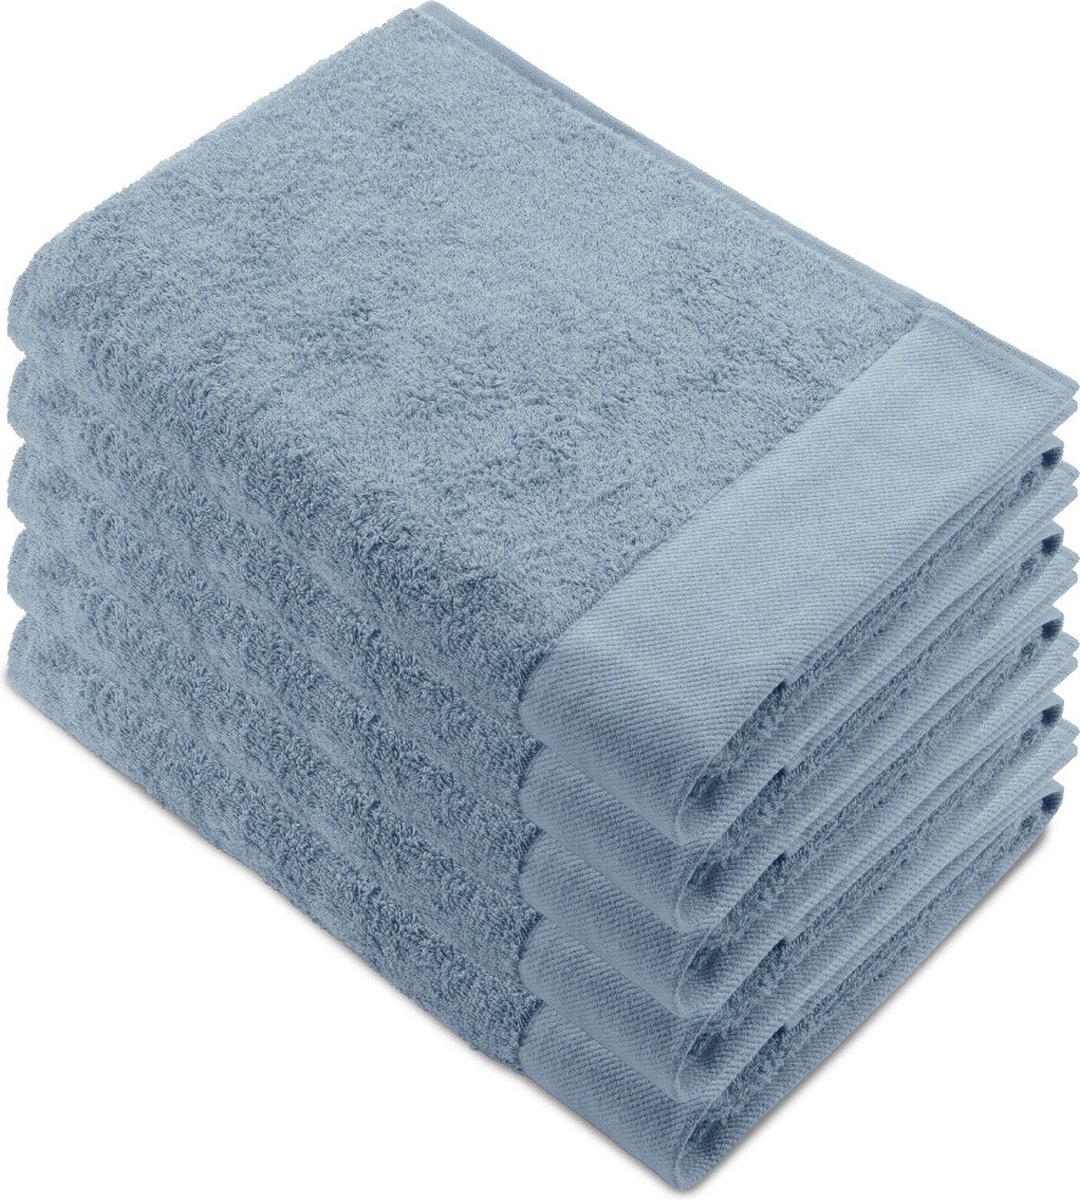 Walra Remade XL Handdoeken 70x140 - set van 5 - Zware kwaliteit 550 g/m2 - Blauw